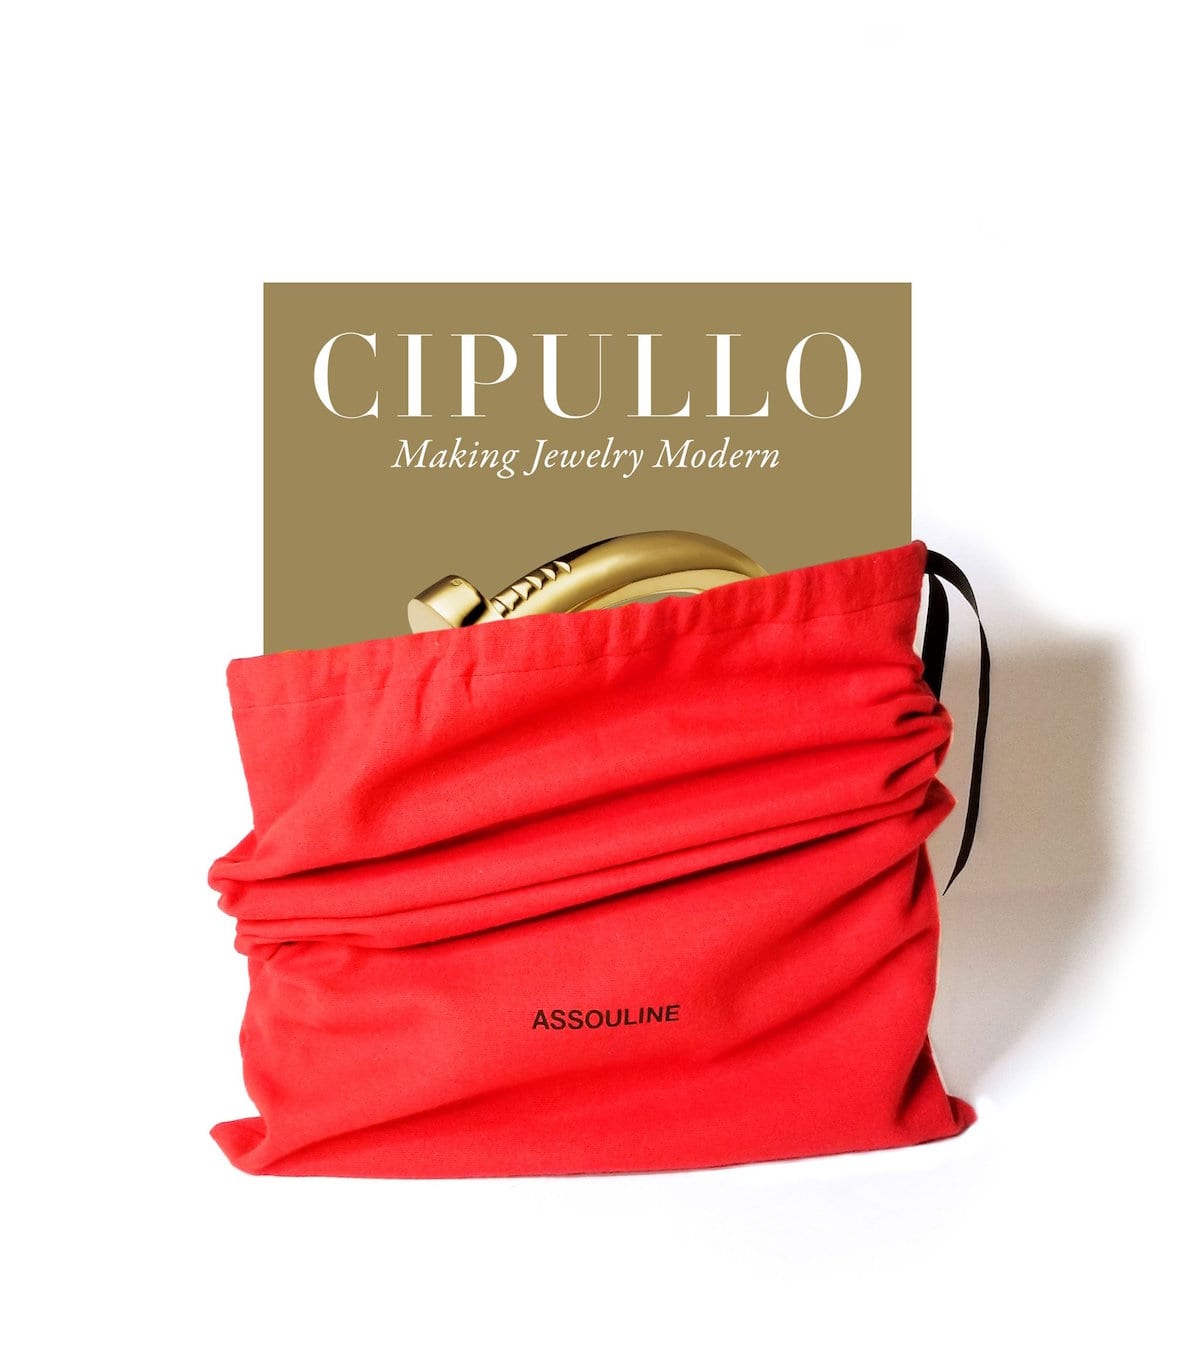 Assouline Cipullo: Att göra smycken modernt